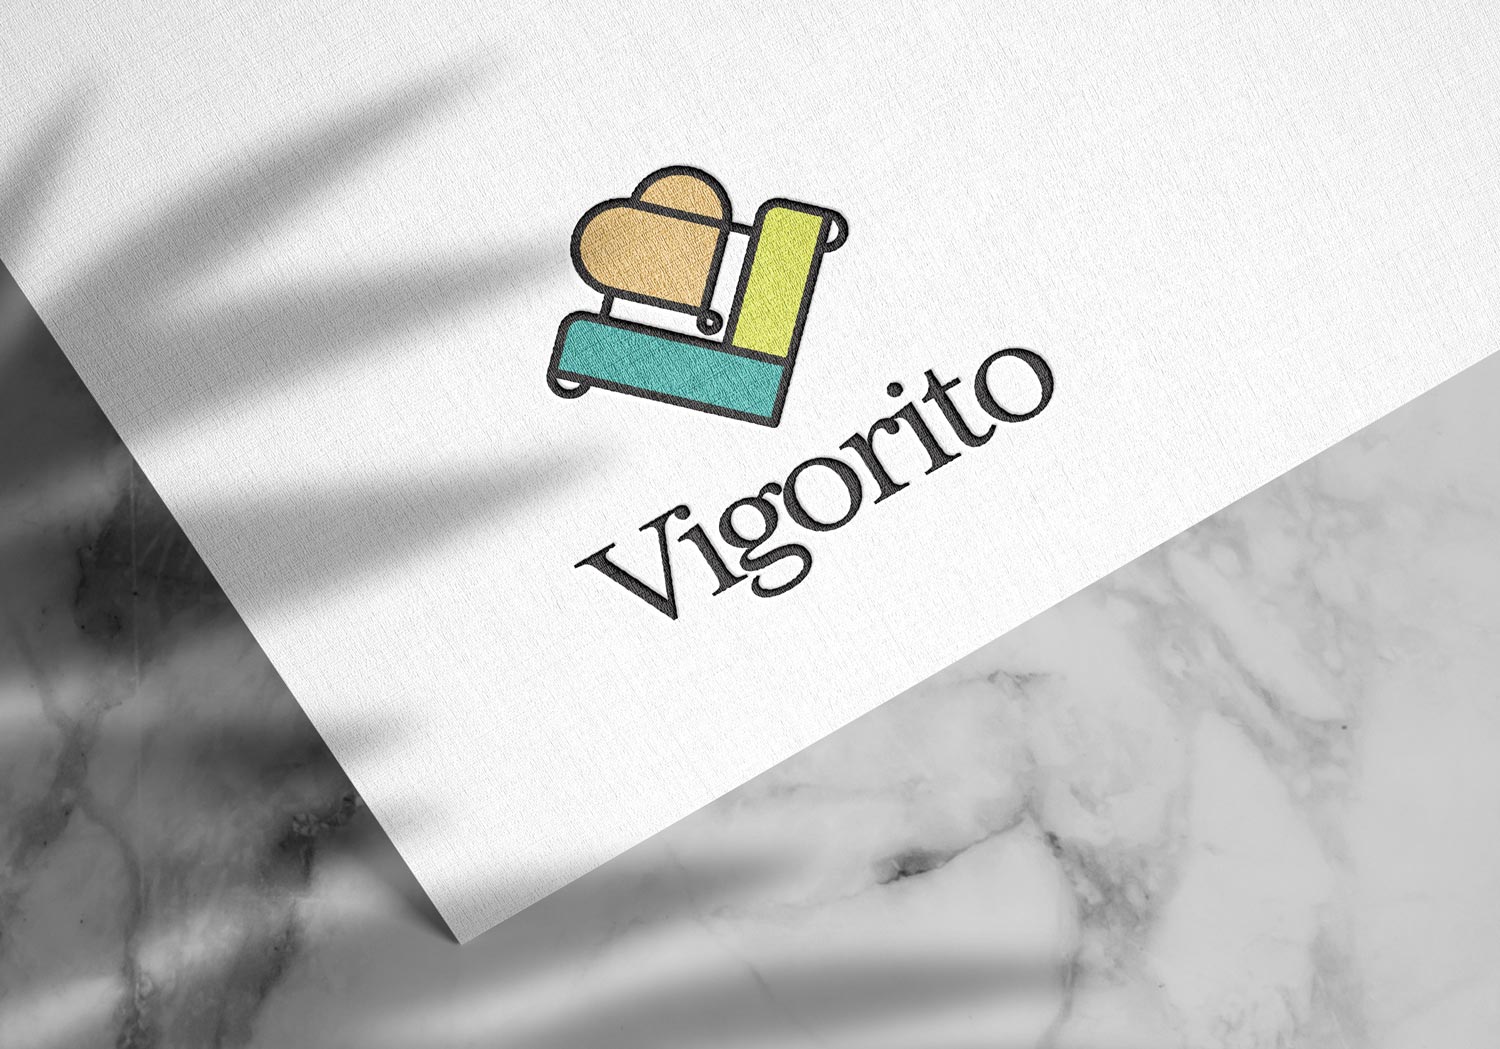 Vigorito brand identity & label design